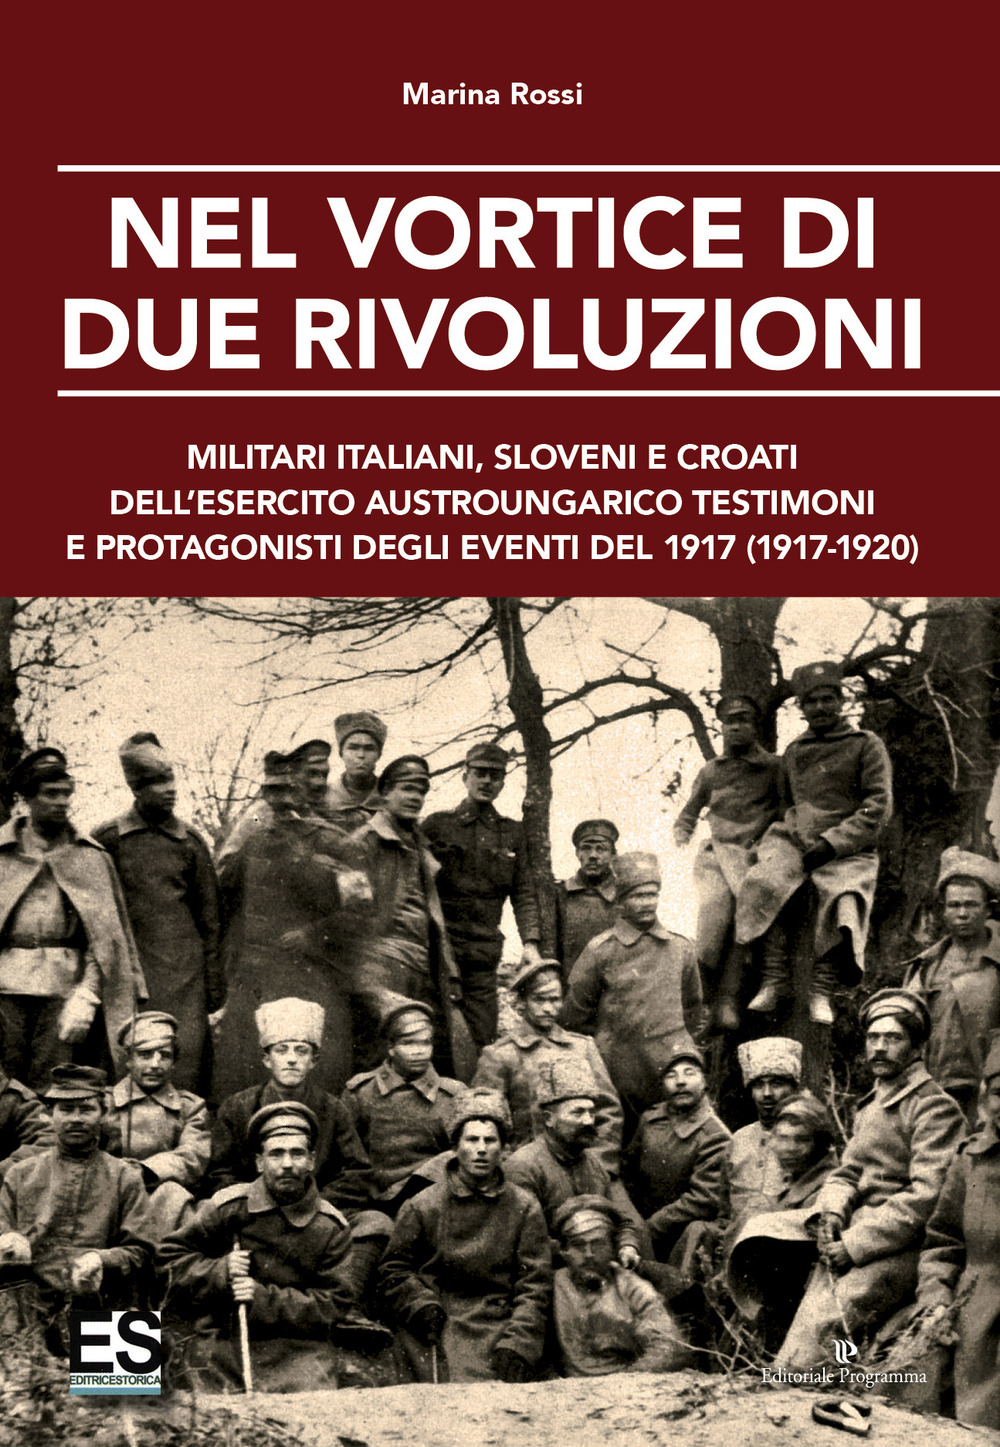 Nel vortice di due rivoluzioni. Militari italiani, sloveni e croati dell'esercito austroungarico testimoni e protagonisti degli eventi del 1917 (1917-1920)